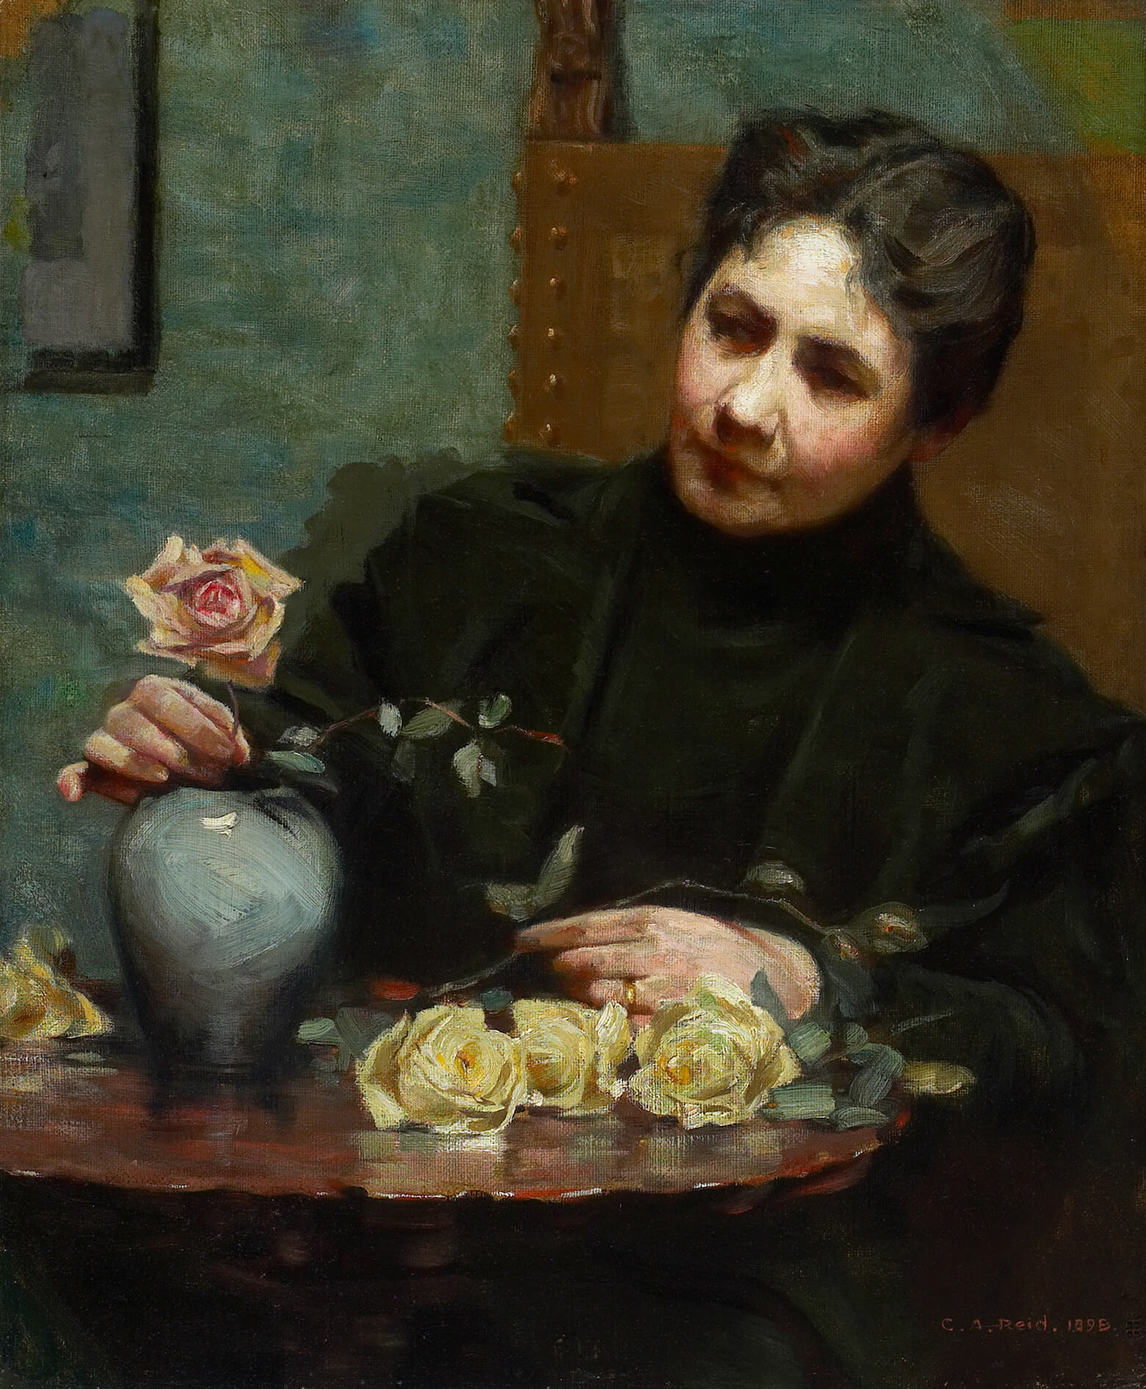 George Agnew Reid, Mary Hiester Reid, 1898